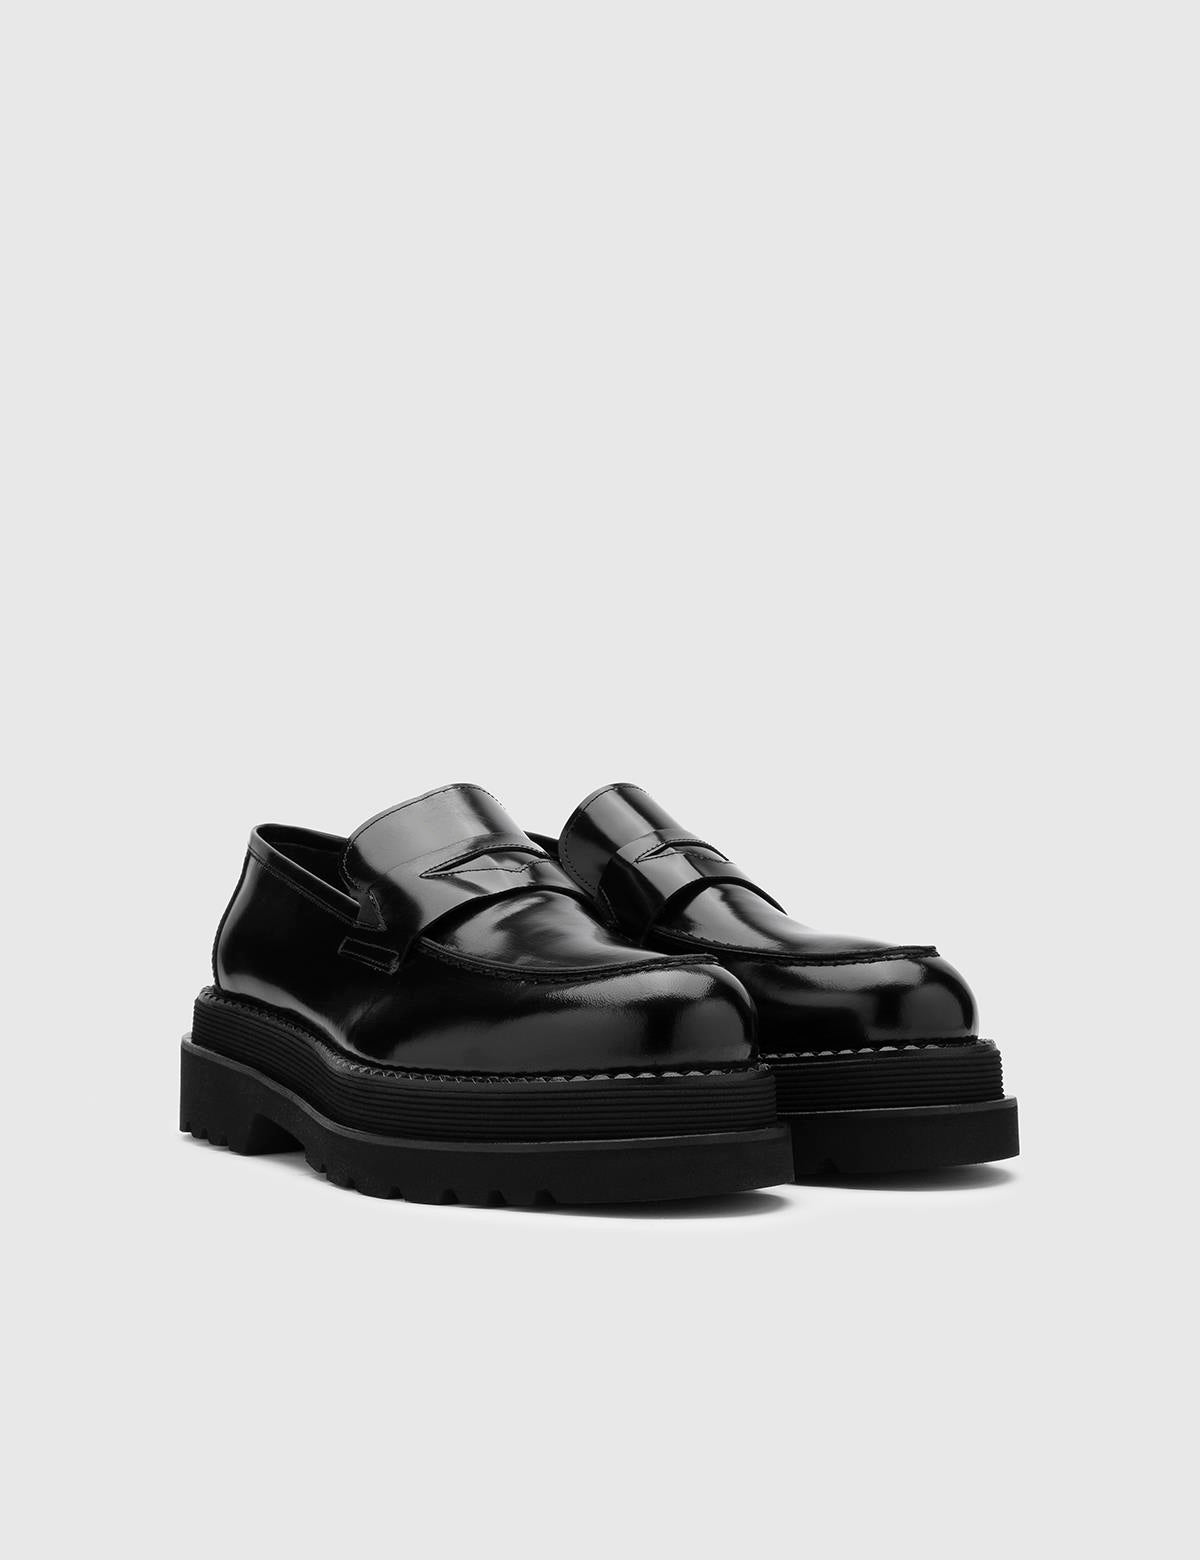 Arve Black Florentic Leather Men's Loafer